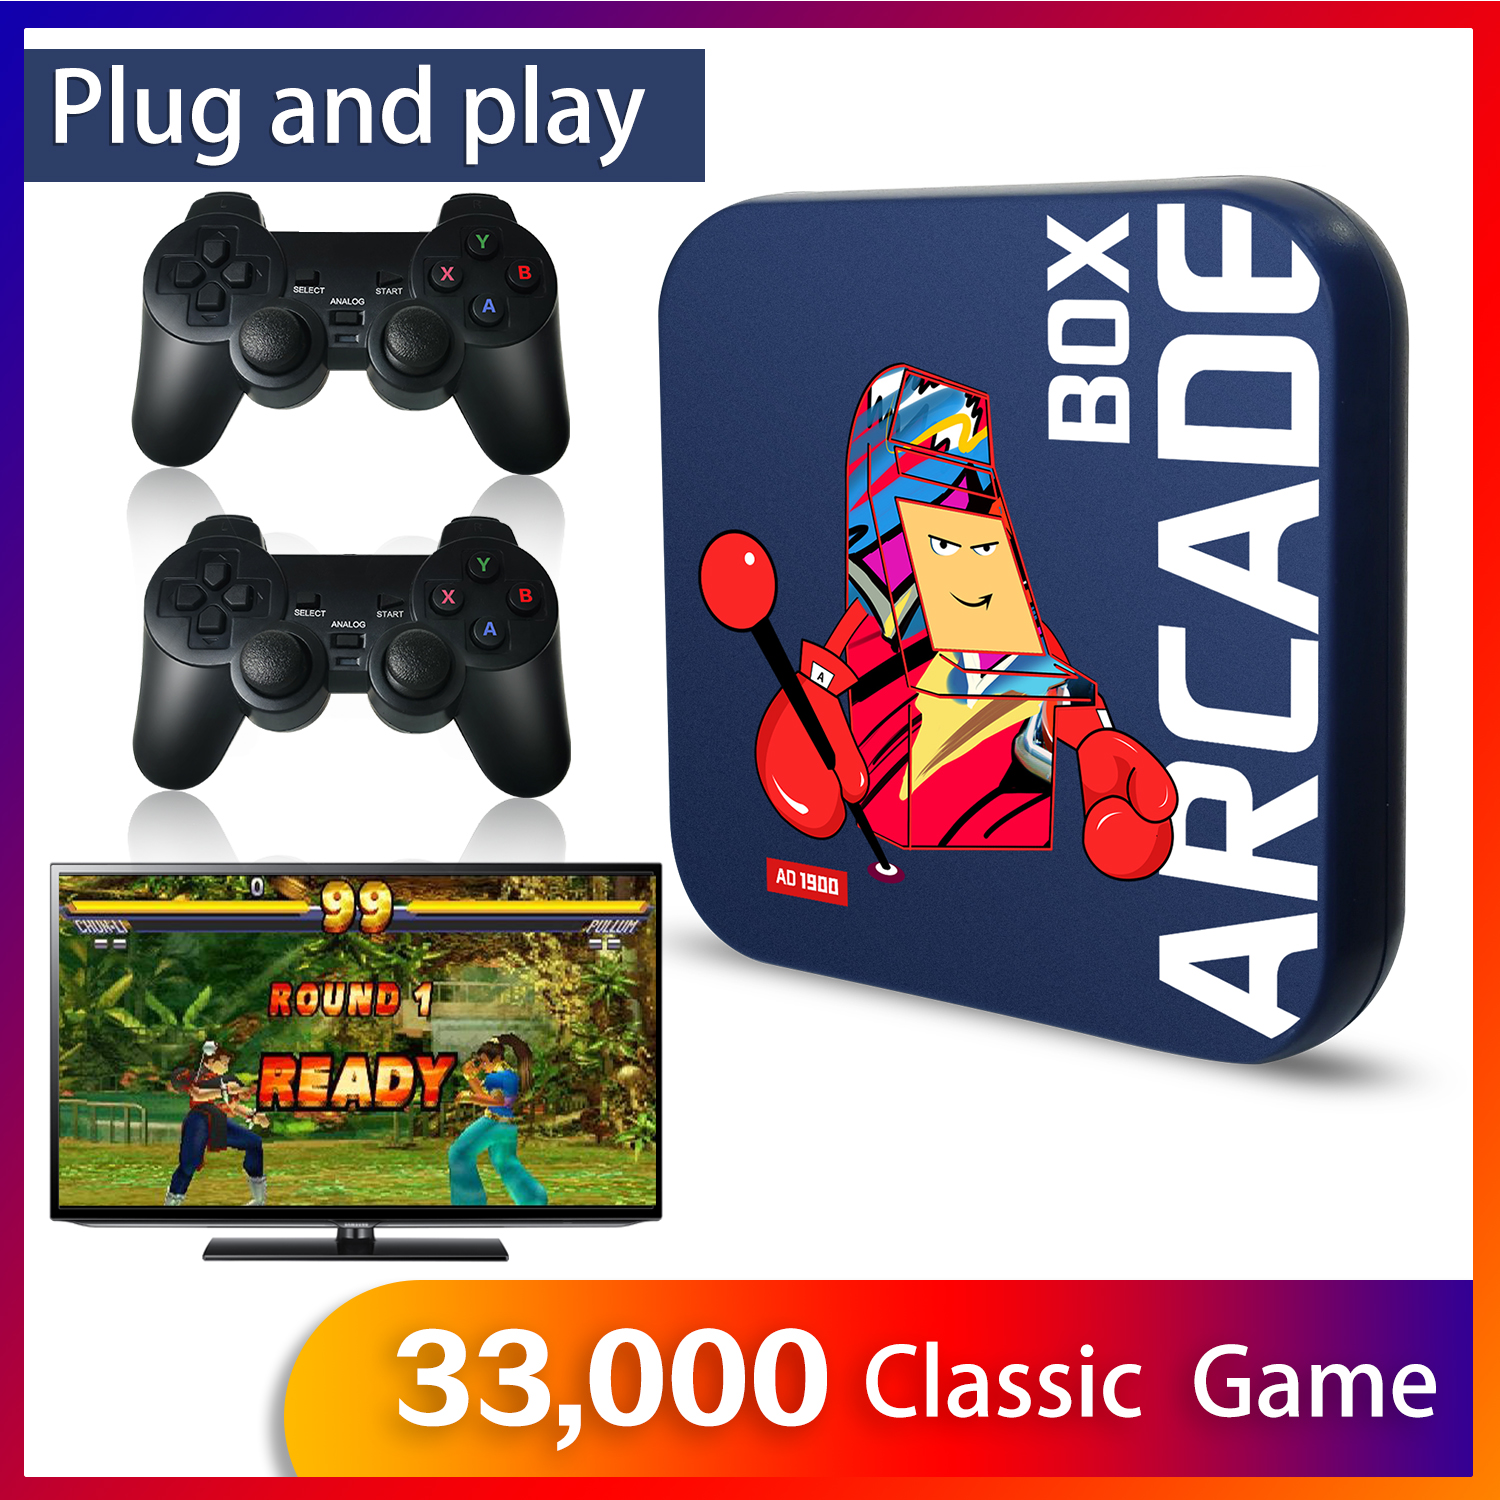 Arcade-Box-Video-Game-Console-PS1-DC-Naomi-64GB-Classic-Retro-33000-Games-Super-Console-4K-HD-Displa-1919055-1